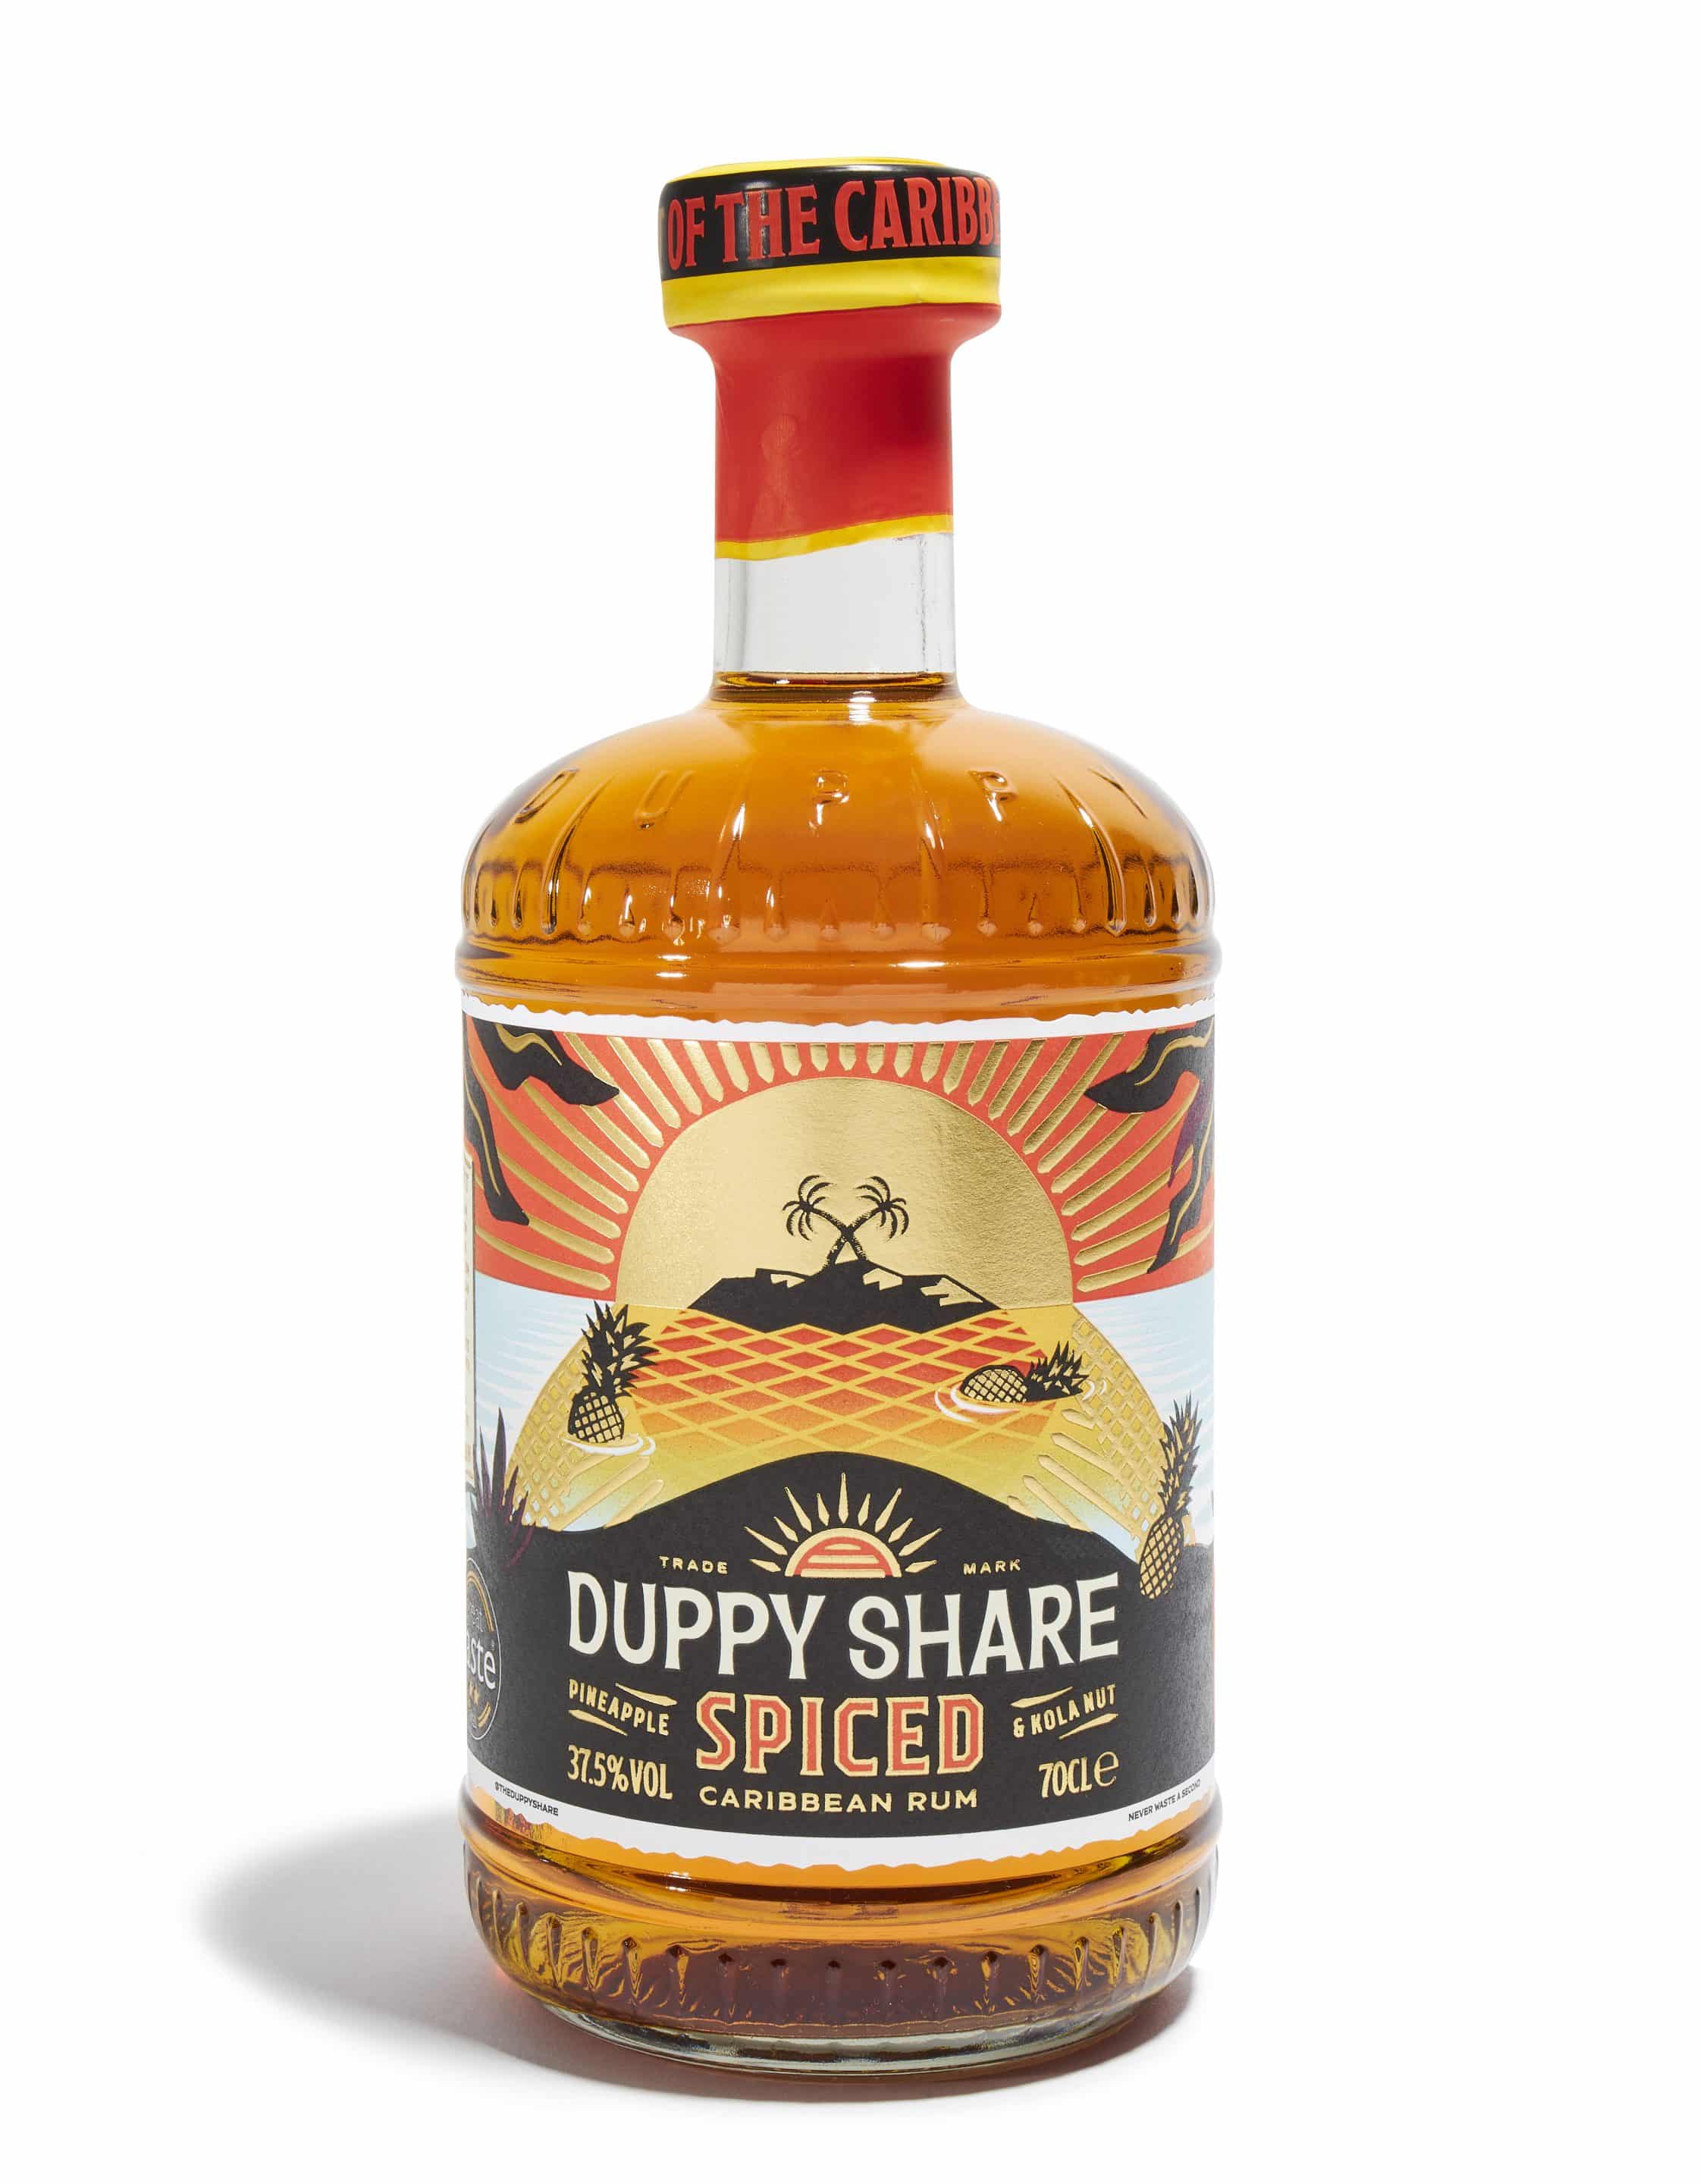 The Duppy Share Spiced rhum épicé